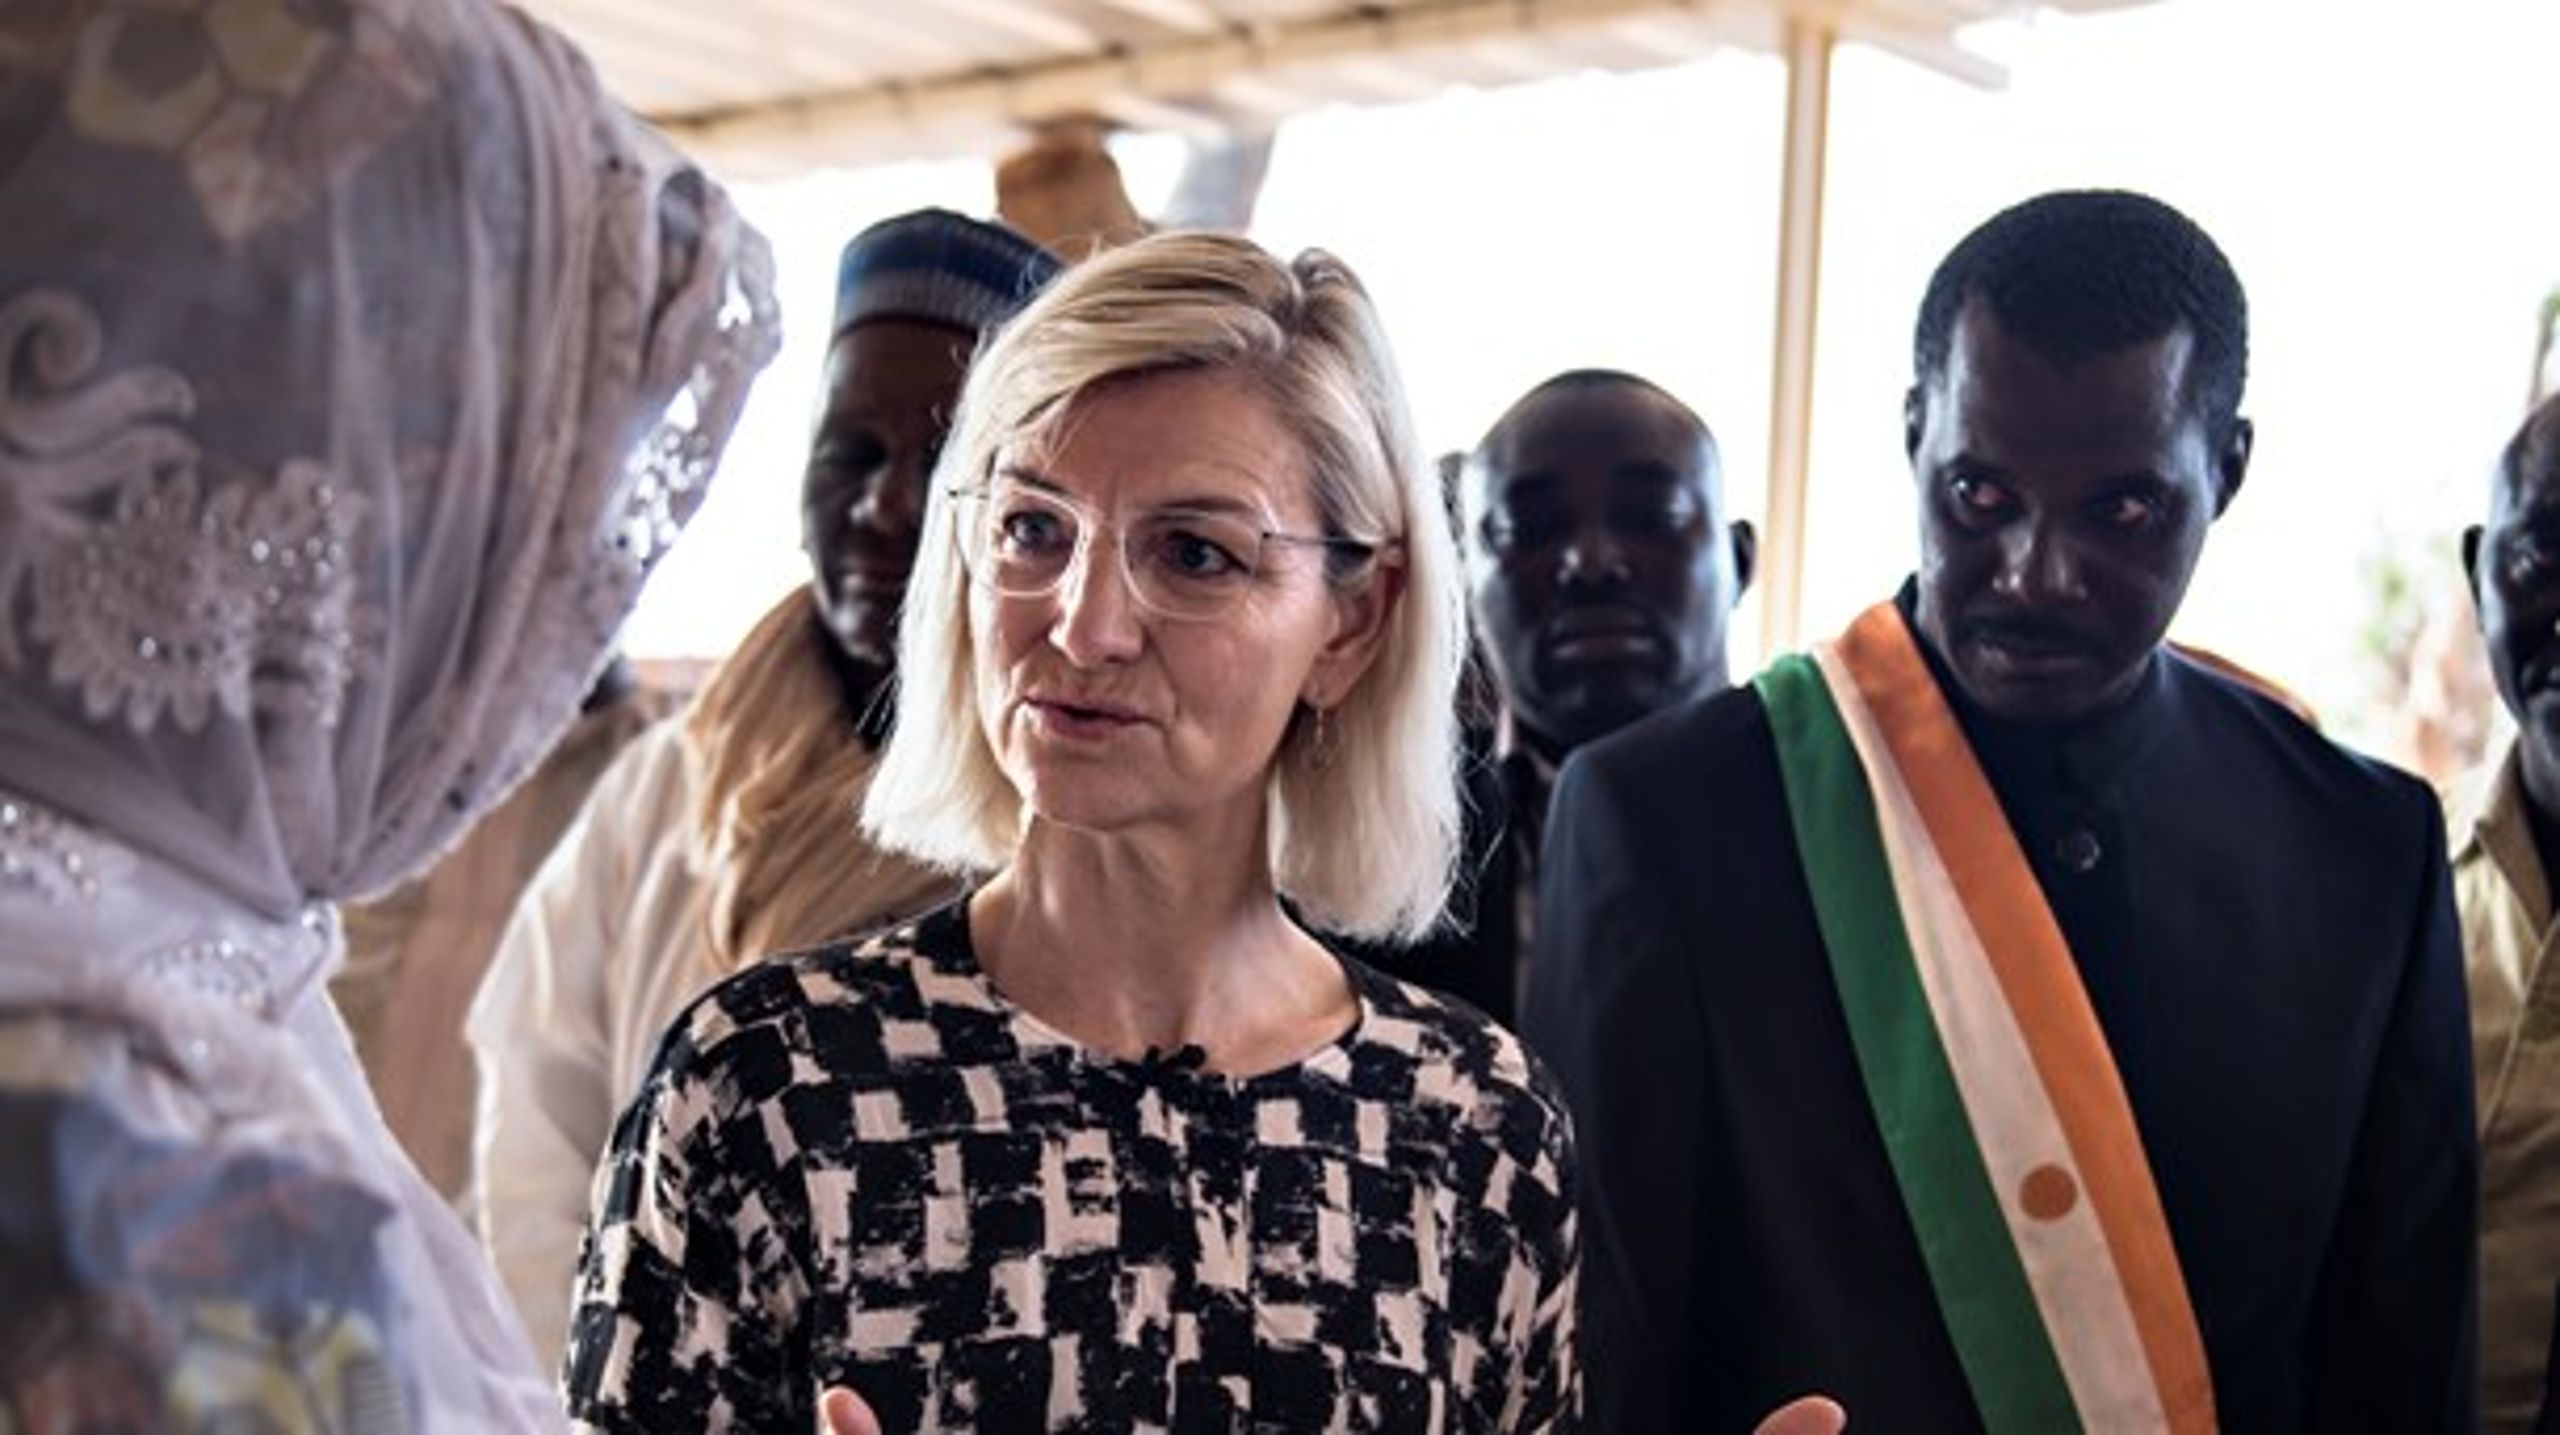 Udviklingsminister Ulla Tørnæs (V) var for nylig på besøg i Niger, hvor Care har projekter i landsbyen Hamdalaye, der skal hjælpe kvinder. Vidste du det? Nej, formentlig ikke ...